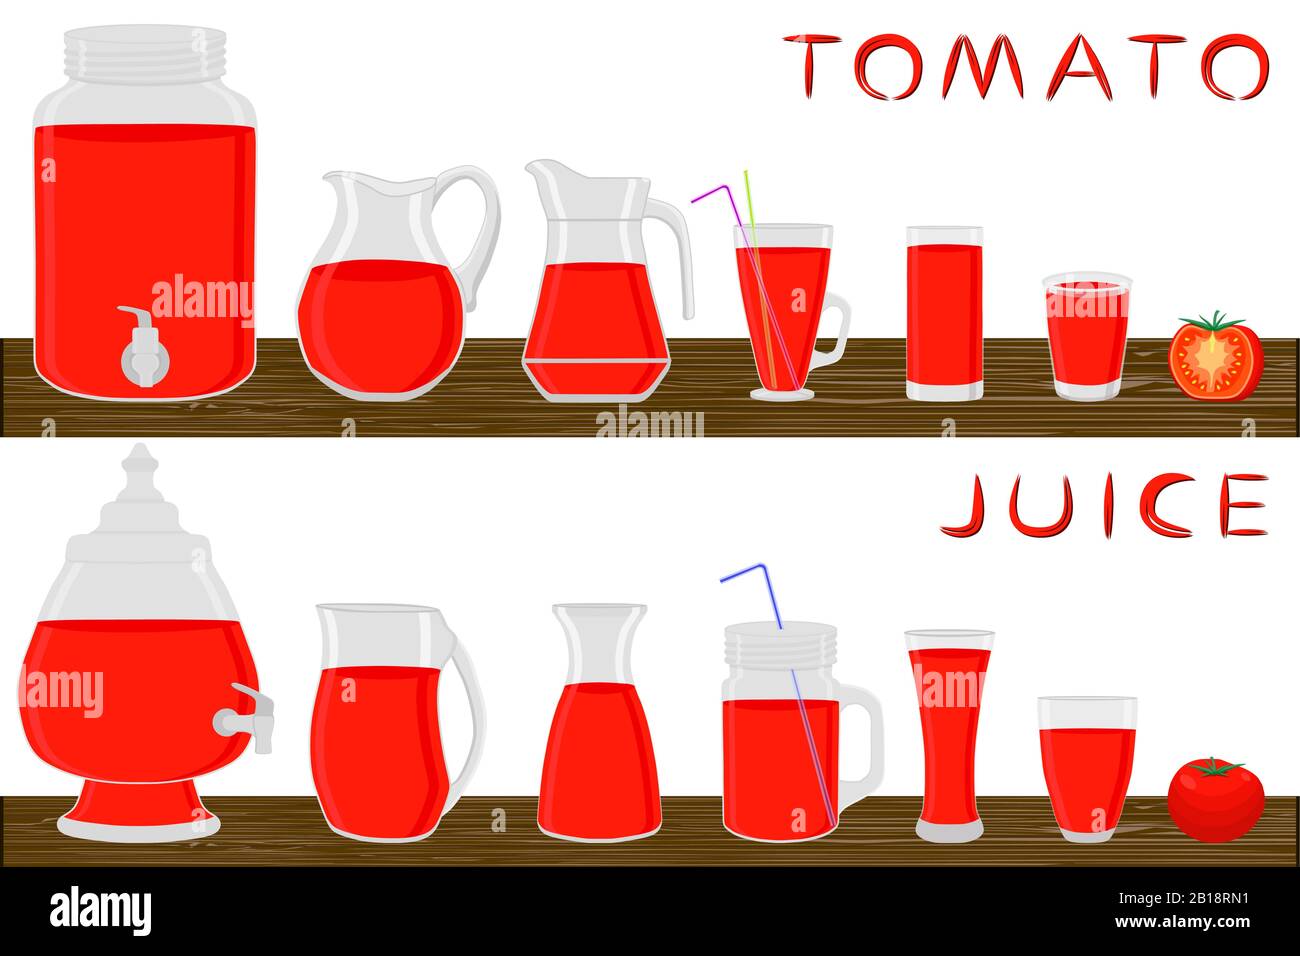 Illustrazione sul tema grande kit diversi tipi di vetreria, bacche di pomodoro varie dimensioni. Vetreria composta da tazze in plastica organica per pomodoro fluido. Brocche Illustrazione Vettoriale